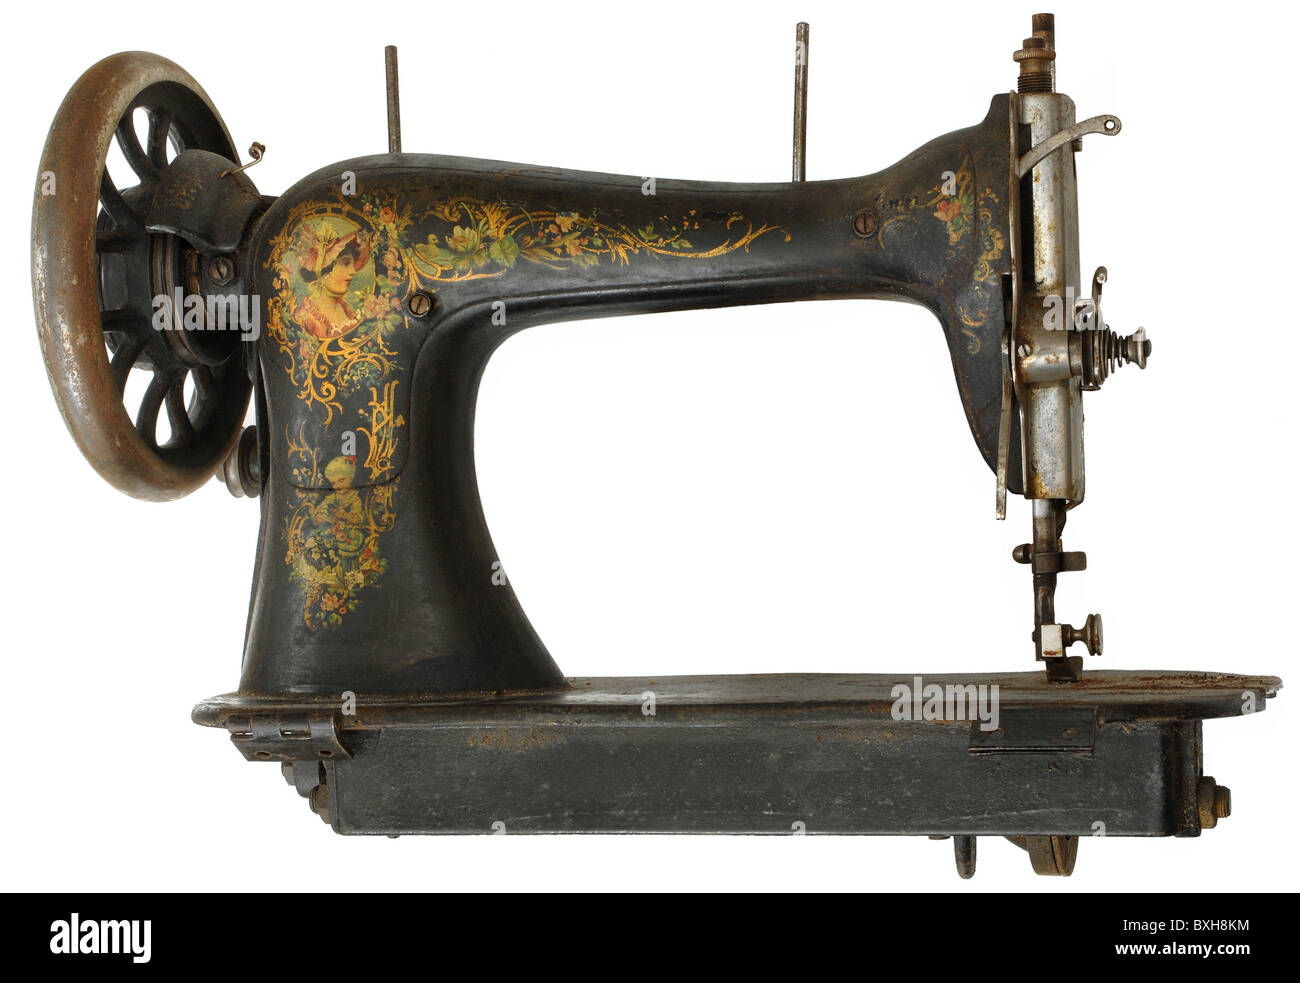 La máquina de coser estaba en 1 de cada 5 hogares del siglo XX